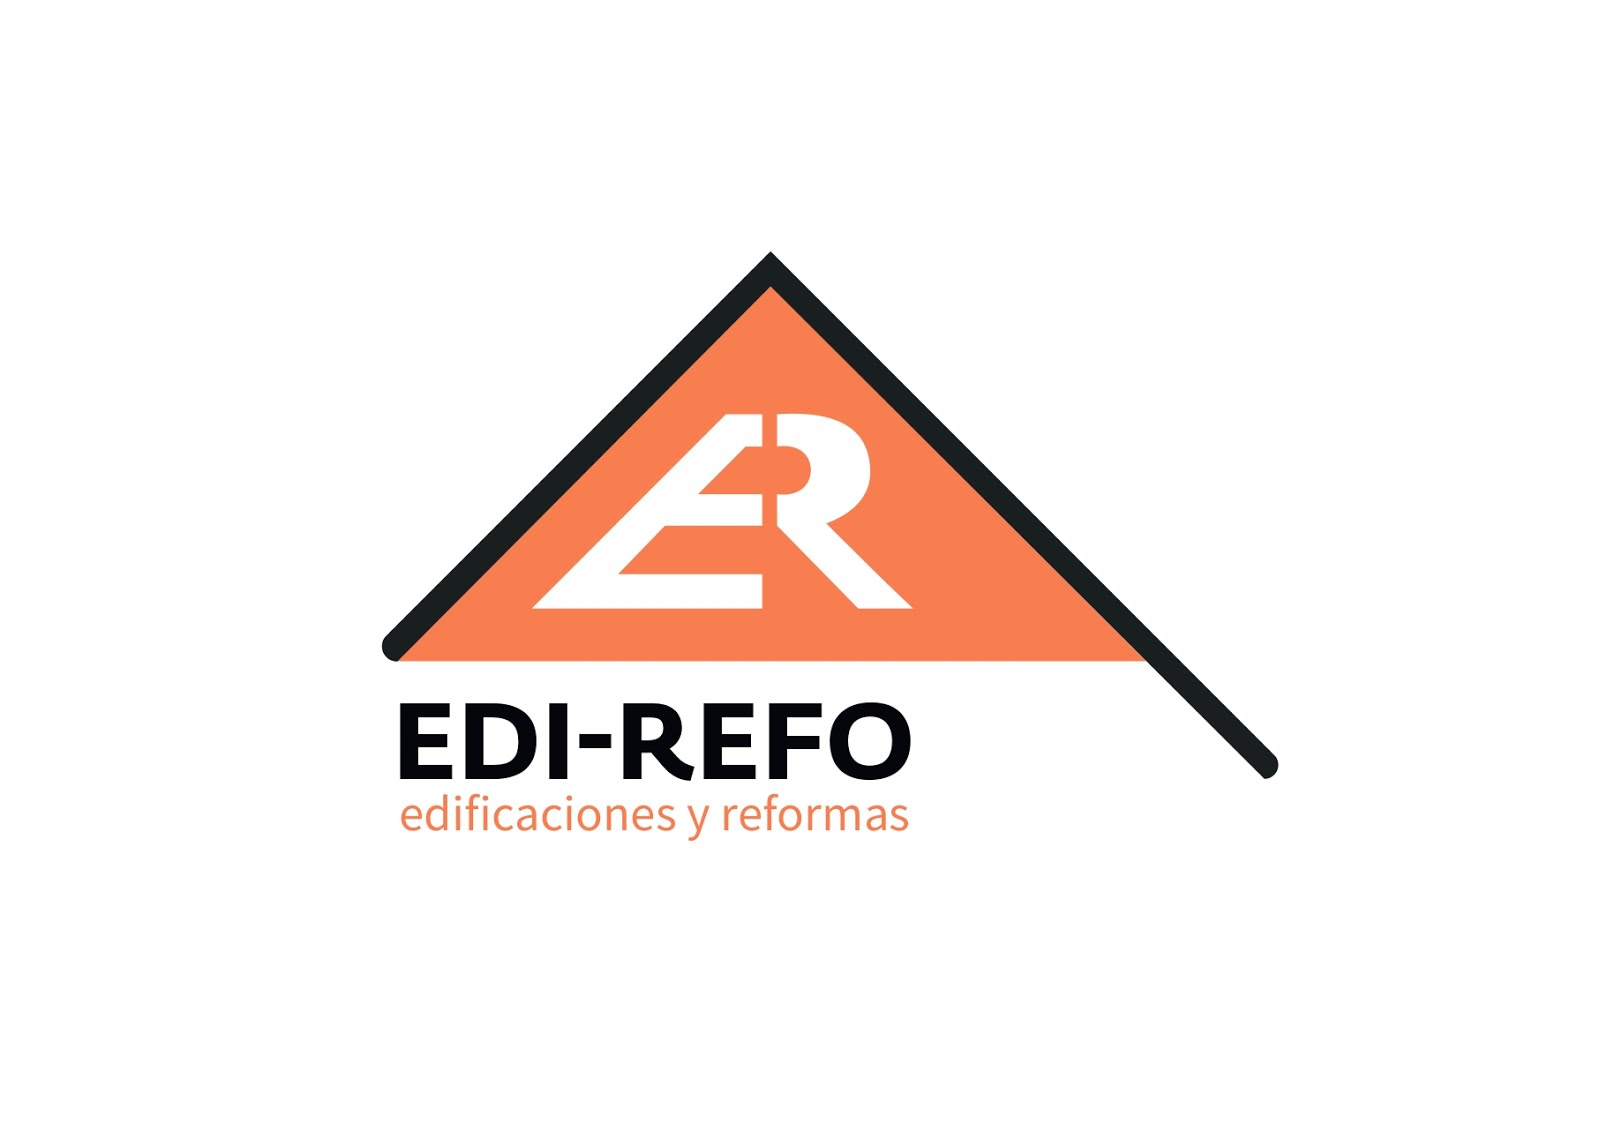 EDI-REFO edificaciones y reformas